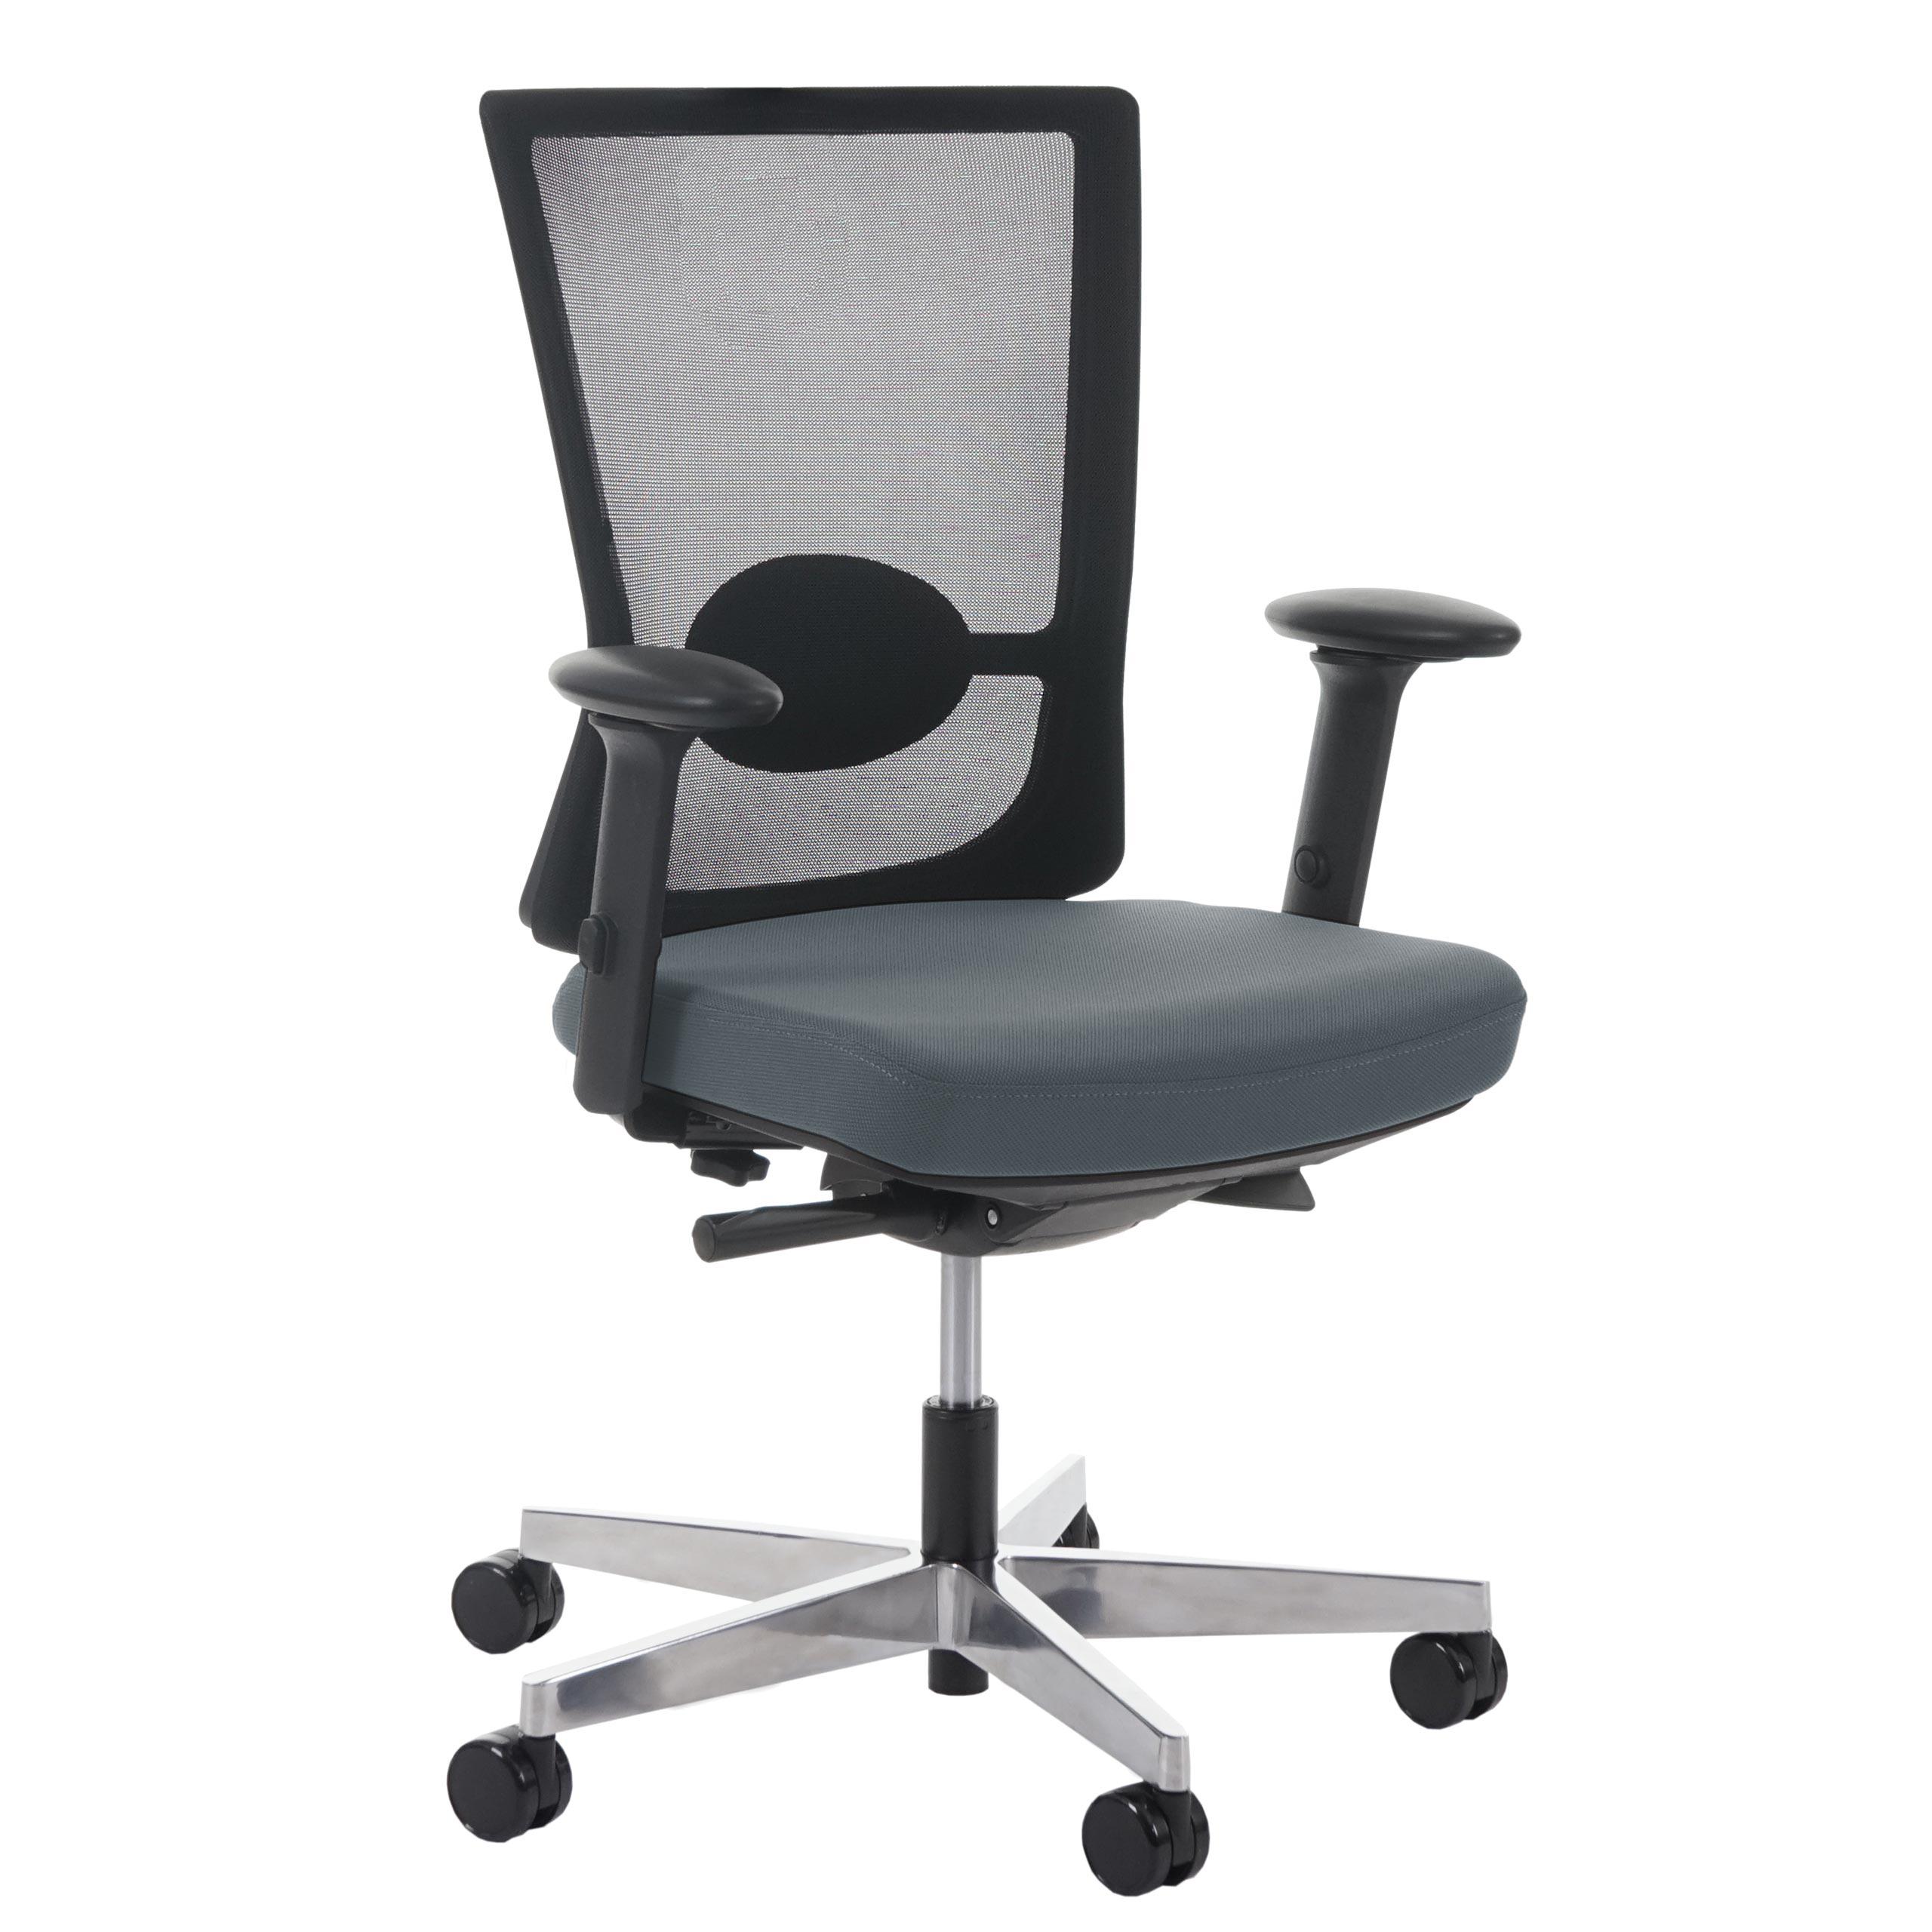 Chaise ergonomique NIL, 100% Ajustable, Excellente Qualité, Utilisation 8 heures, Gris